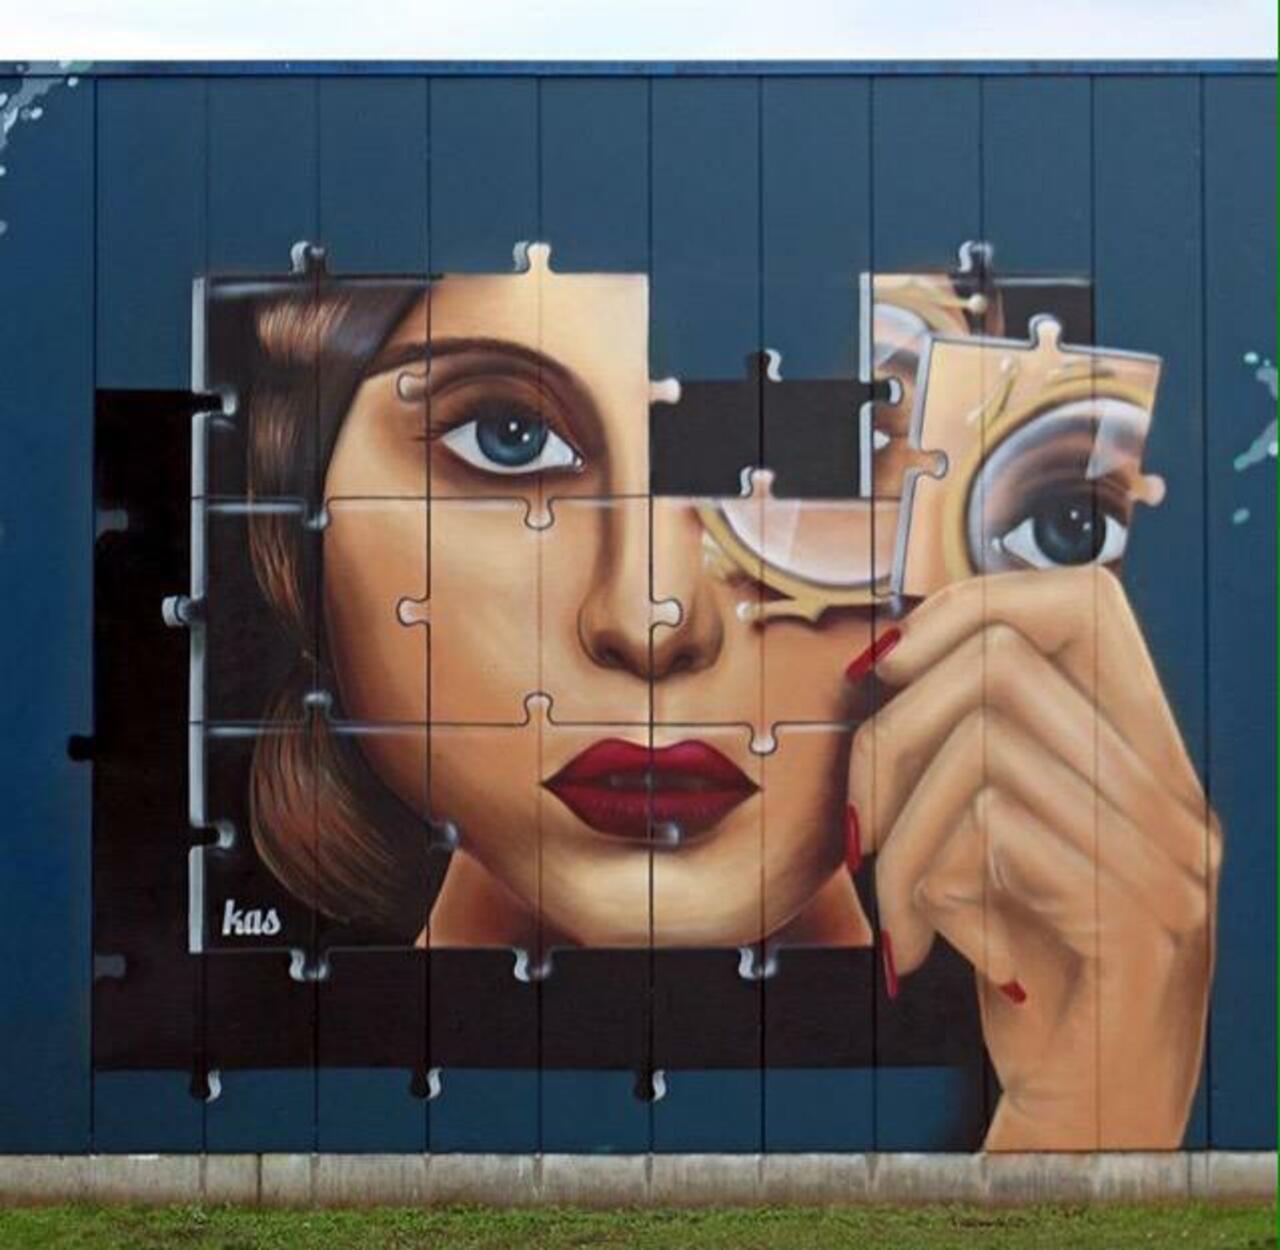 JewelNiles1: Kas Art's new Street Art "Piece of me" in Aalst Belgium 

#art #graffiti #mural #streetart http://t.co/hiwRvMRHbl